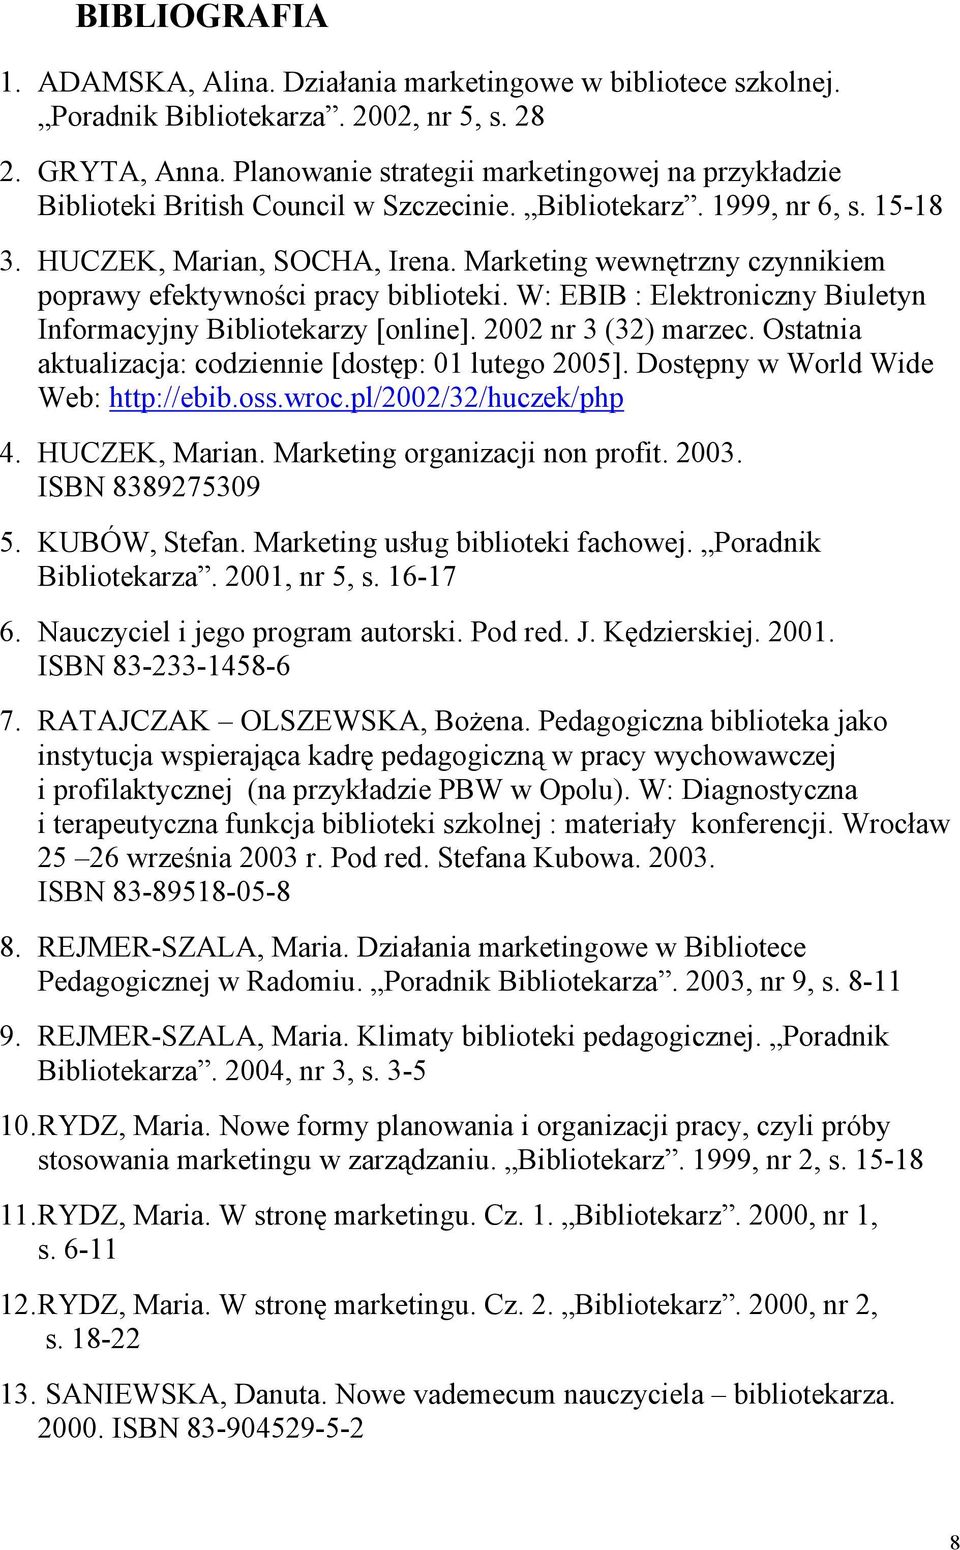 Marketing wewnętrzny czynnikiem poprawy efektywności pracy W: EBIB : Elektroniczny Biuletyn Informacyjny Bibliotekarzy [online]. 2002 nr 3 (32) marzec.